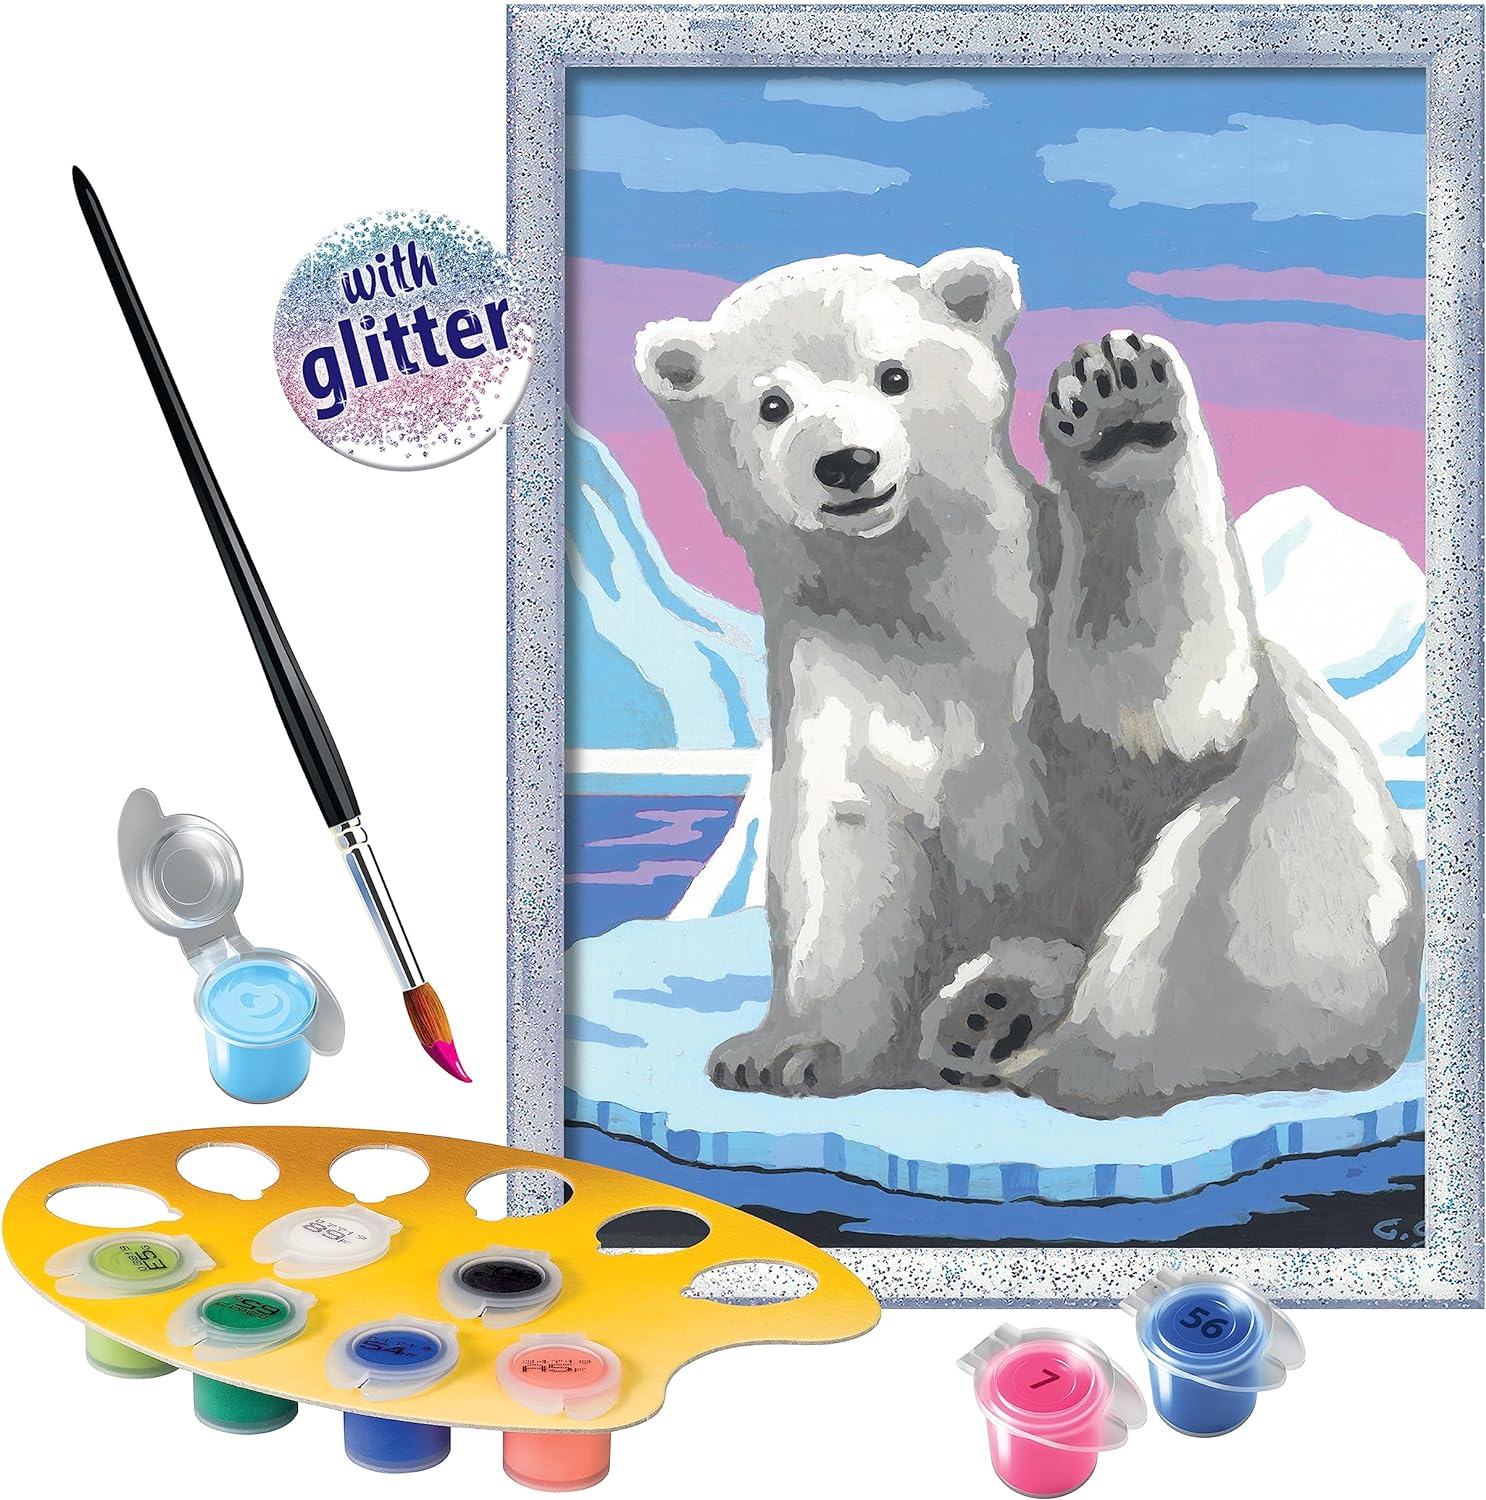 20079 Ravensburger - CreArt Serie D: Ciao Ciao Orso Polare, Kit per  Dipingere con i Numeri, Contiene una Tavola Prestampata, Pennello, Colori e  Accessori, Gioco Creativo per Bambini, Età 9+, Orso polare – Full Toys